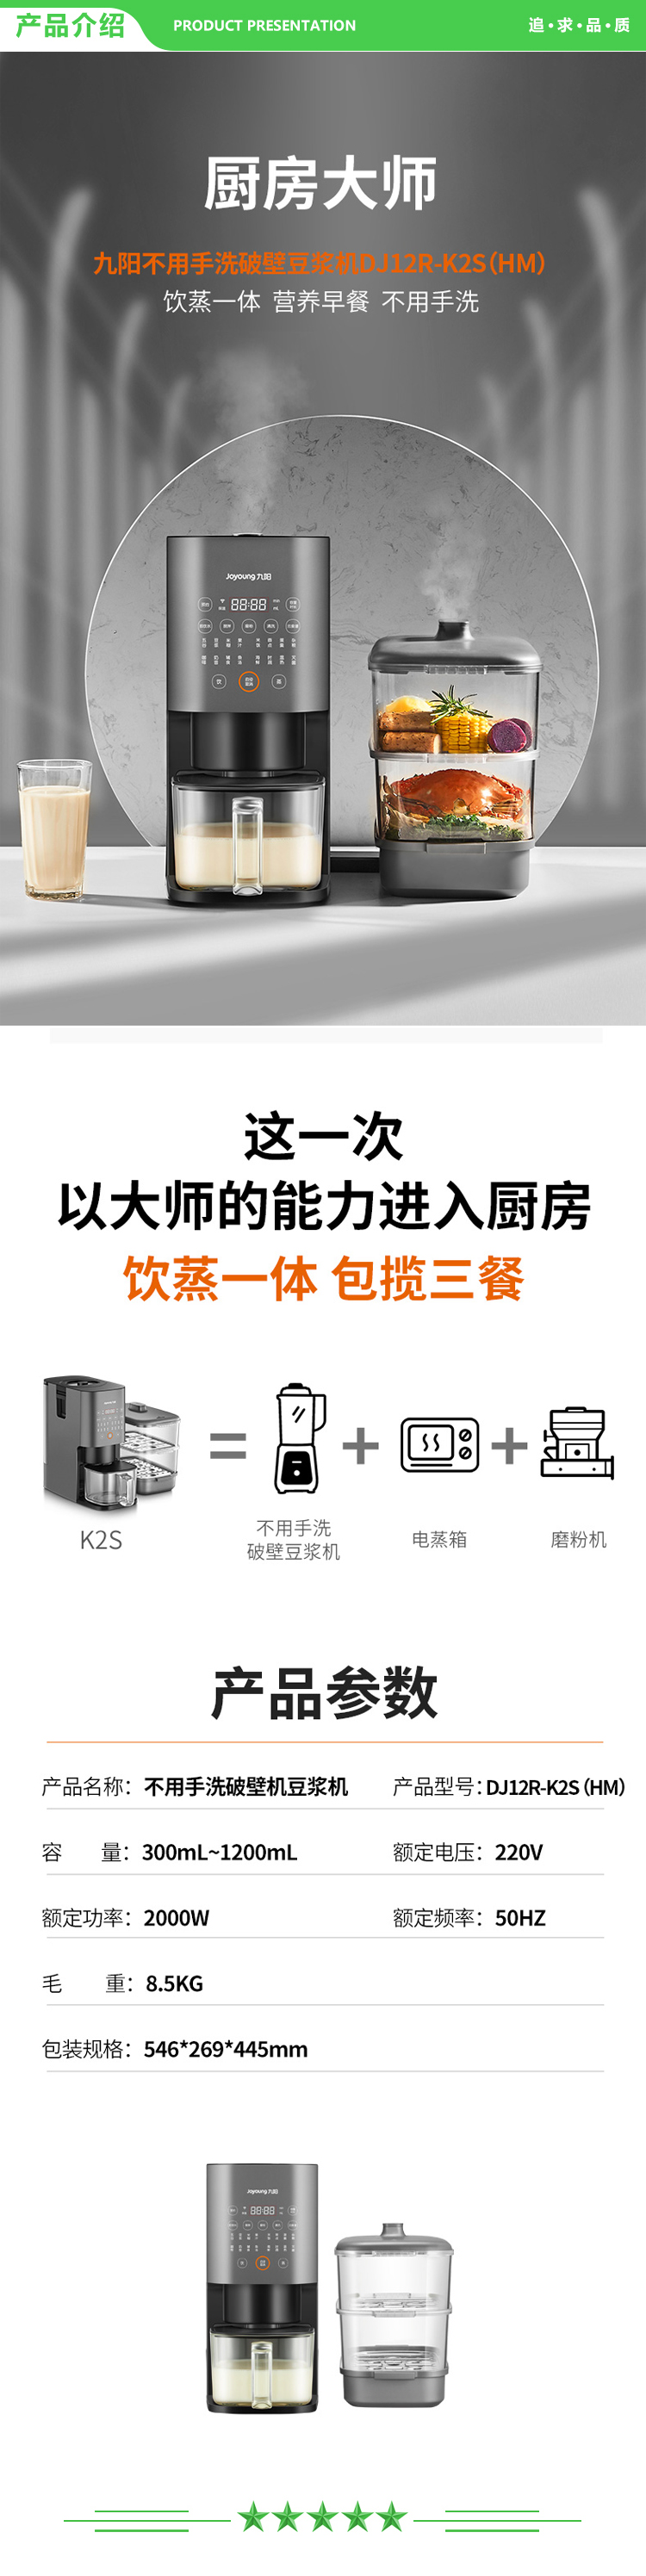 九阳 Joyoung DJ12R-K2S 豆浆机 全自动免洗破壁料理机多功能家用智能蒸煮一体.jpg